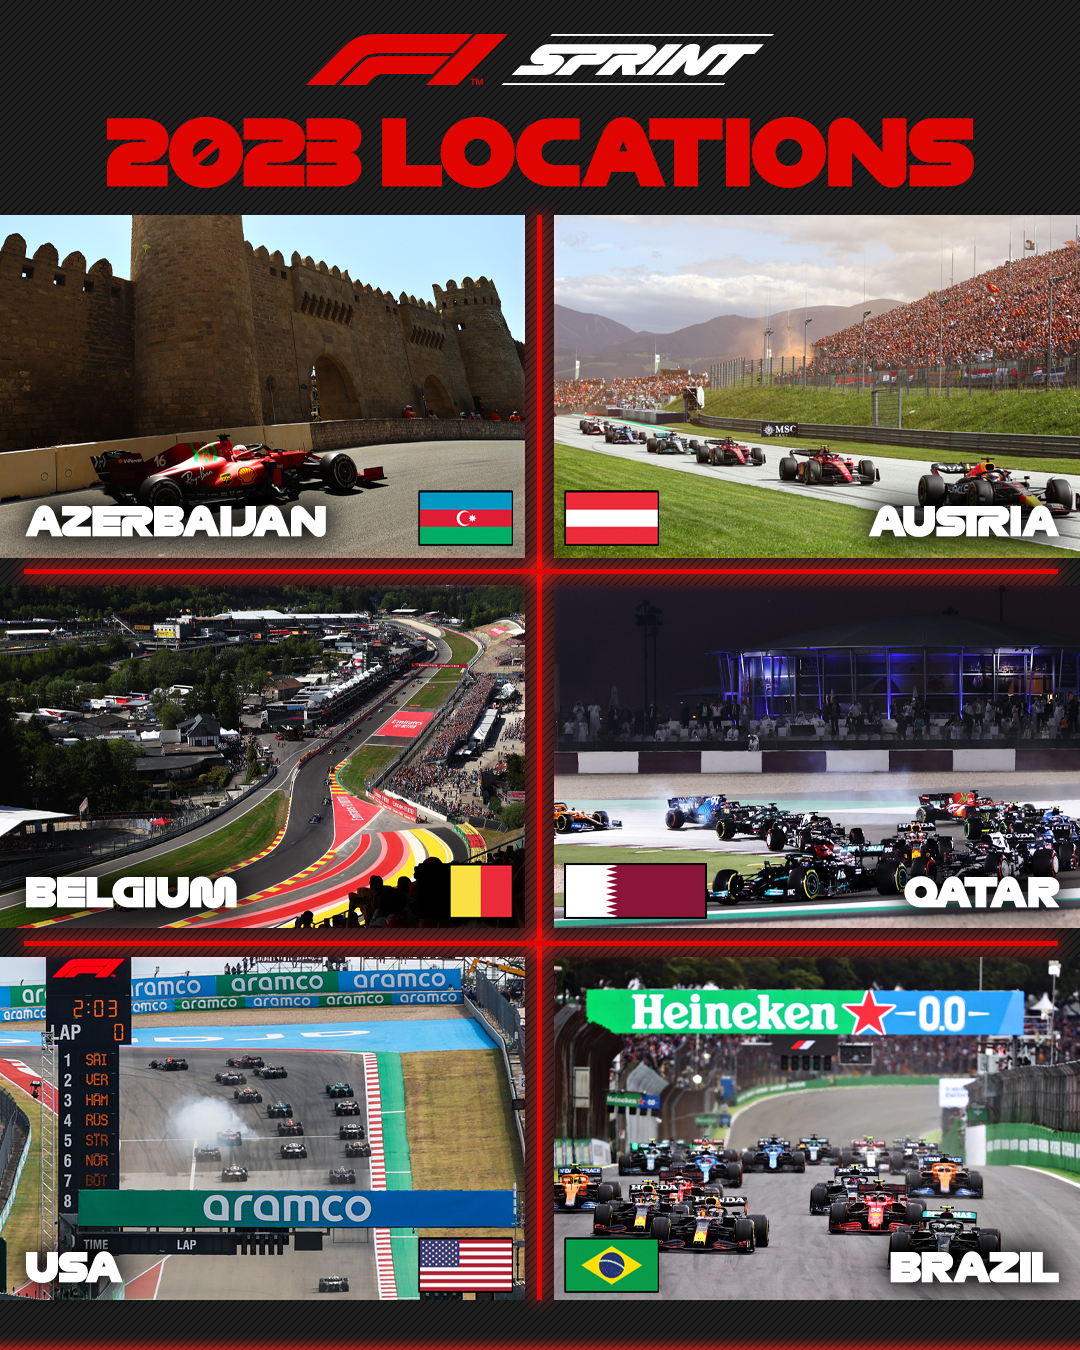 La F1 da a conocer los seis circuitos elegidos para las carreras al